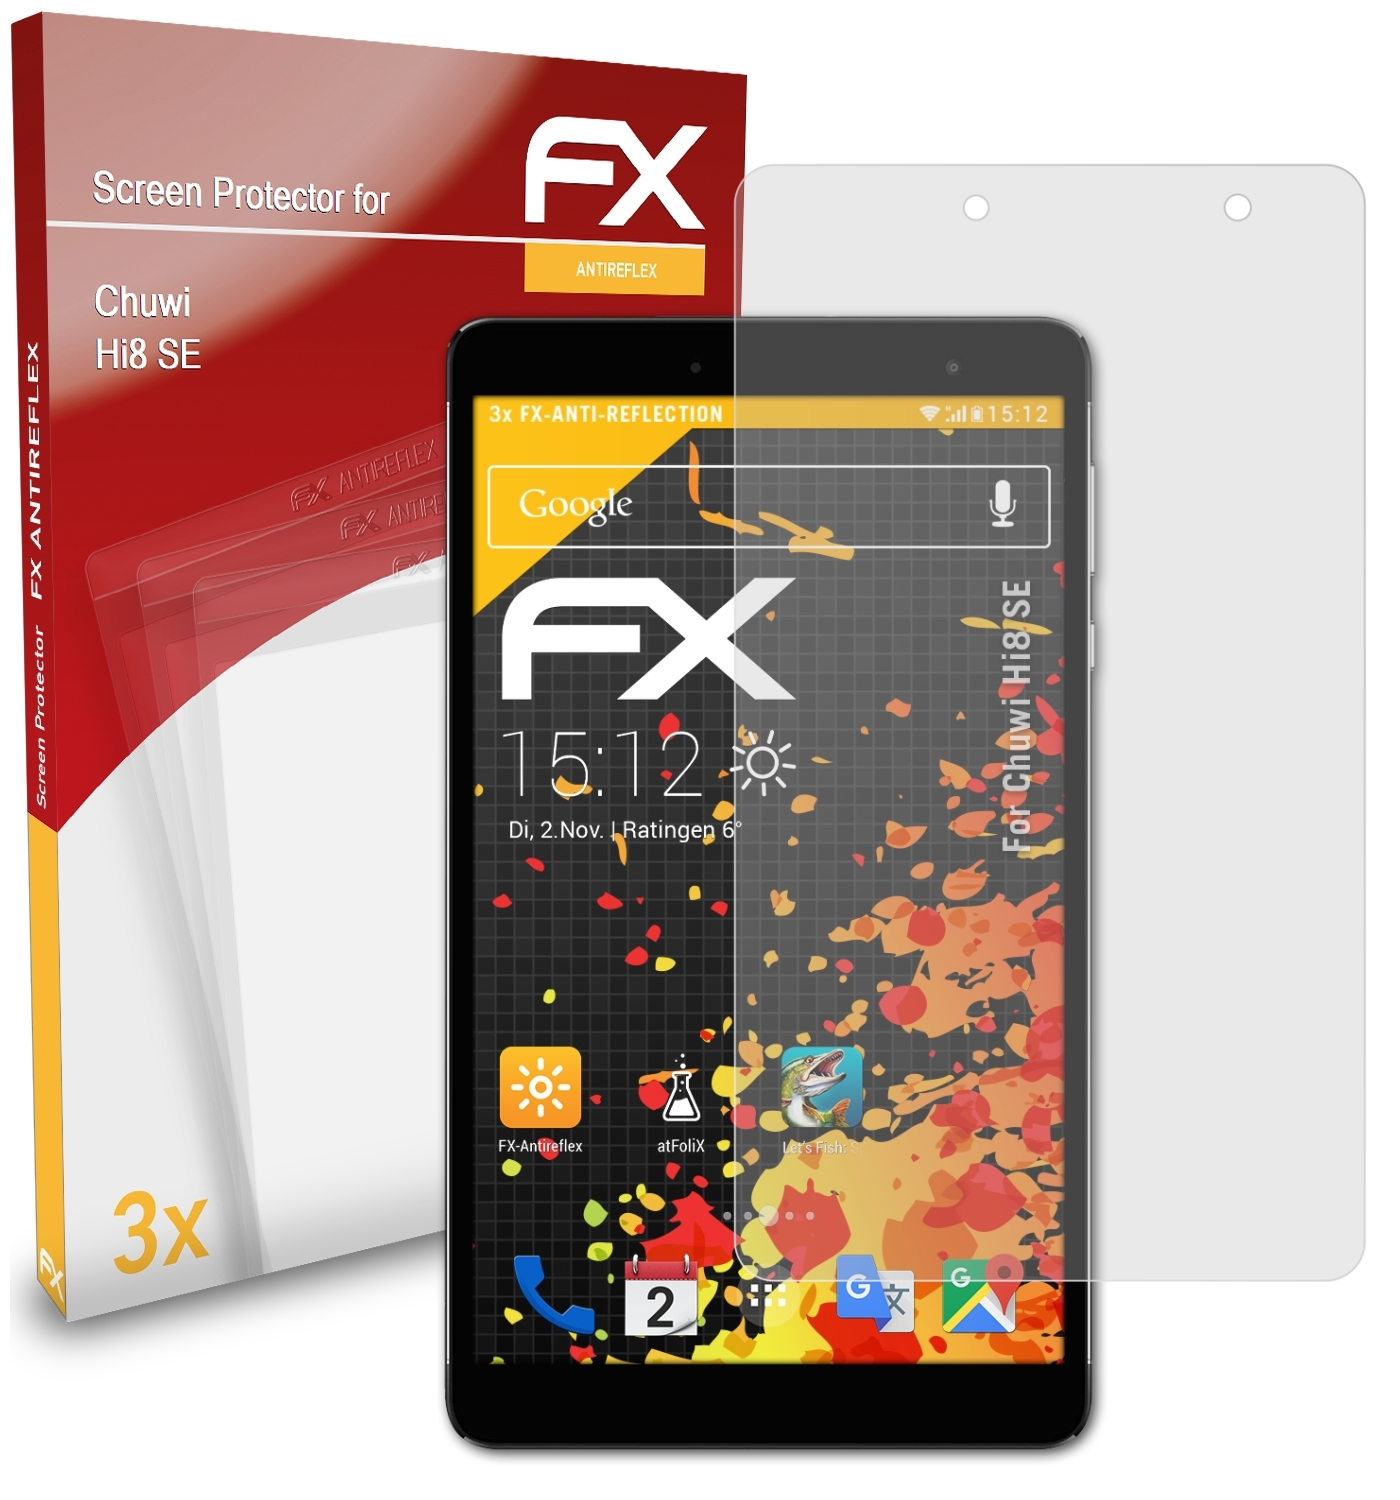 ATFOLIX 3x SE) FX-Antireflex Hi8 Chuwi Displayschutz(für